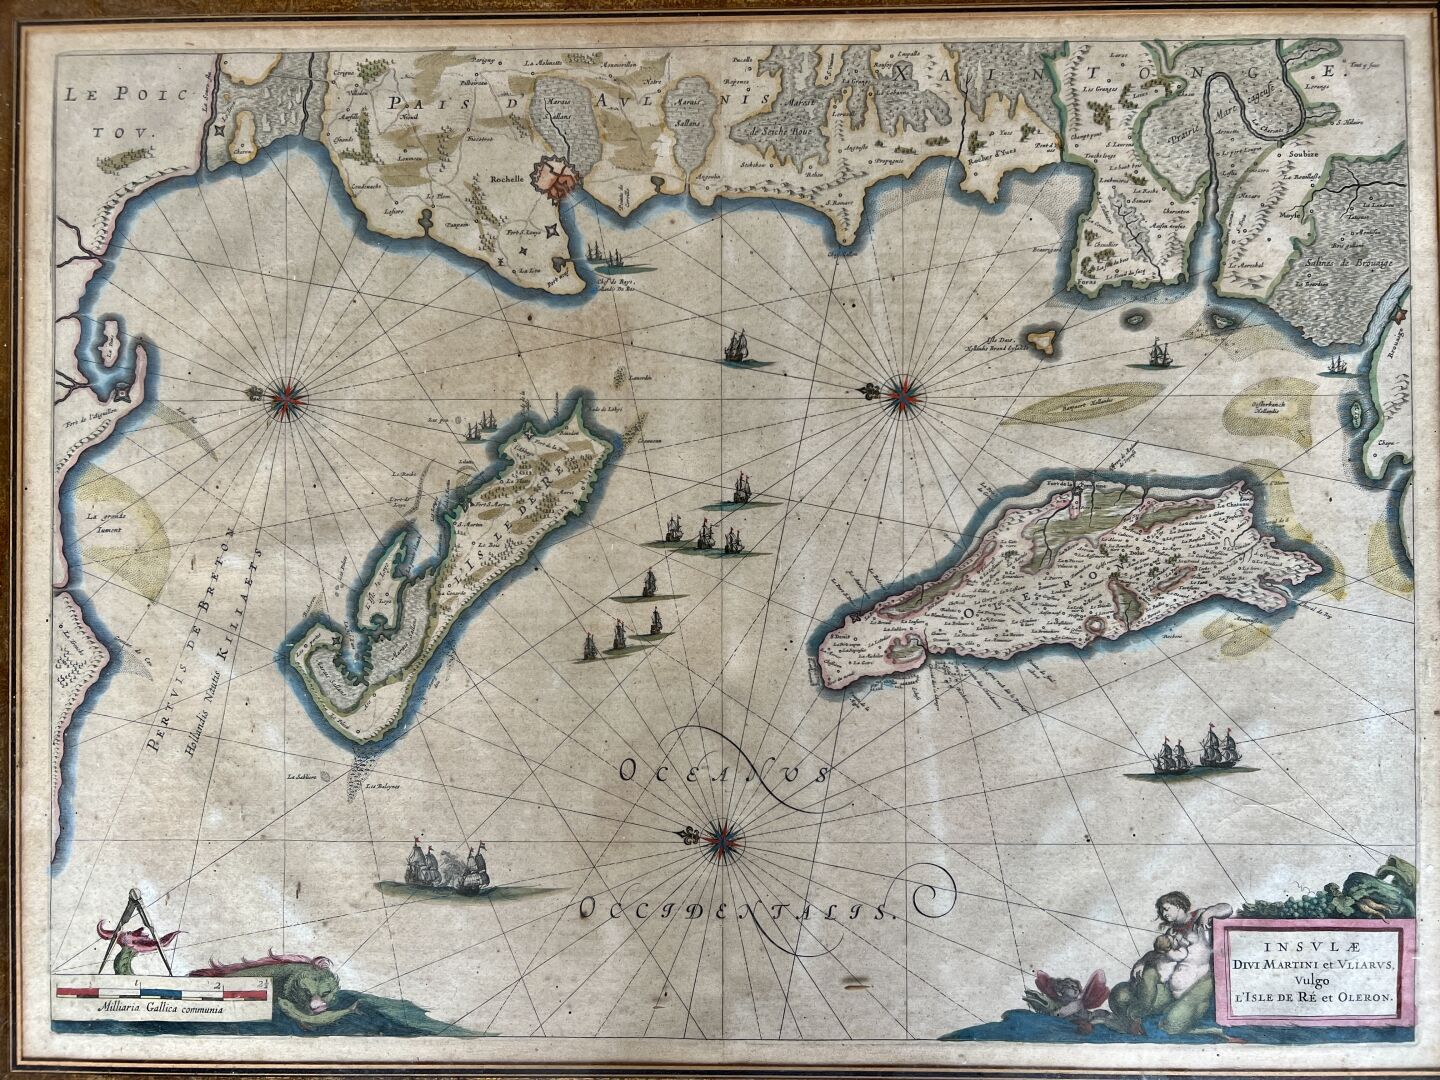 Null "Insulae Divi Martini et Uliarus Vulgo l'Isle de Re et Oleron"
Engraved map&hellip;